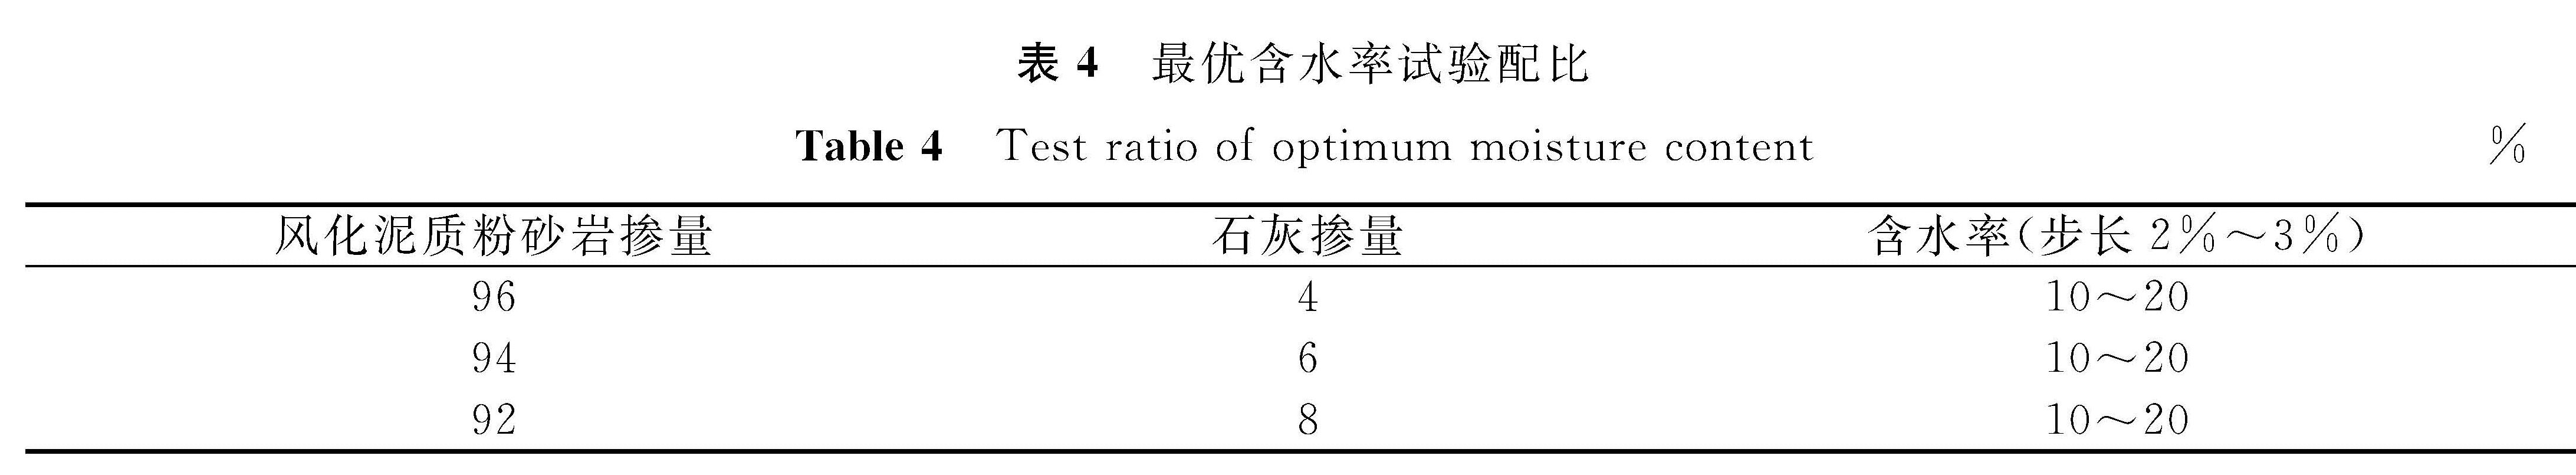 表4 最优含水率试验配比<br/>Table 4 Test ratio of optimum moisture content%